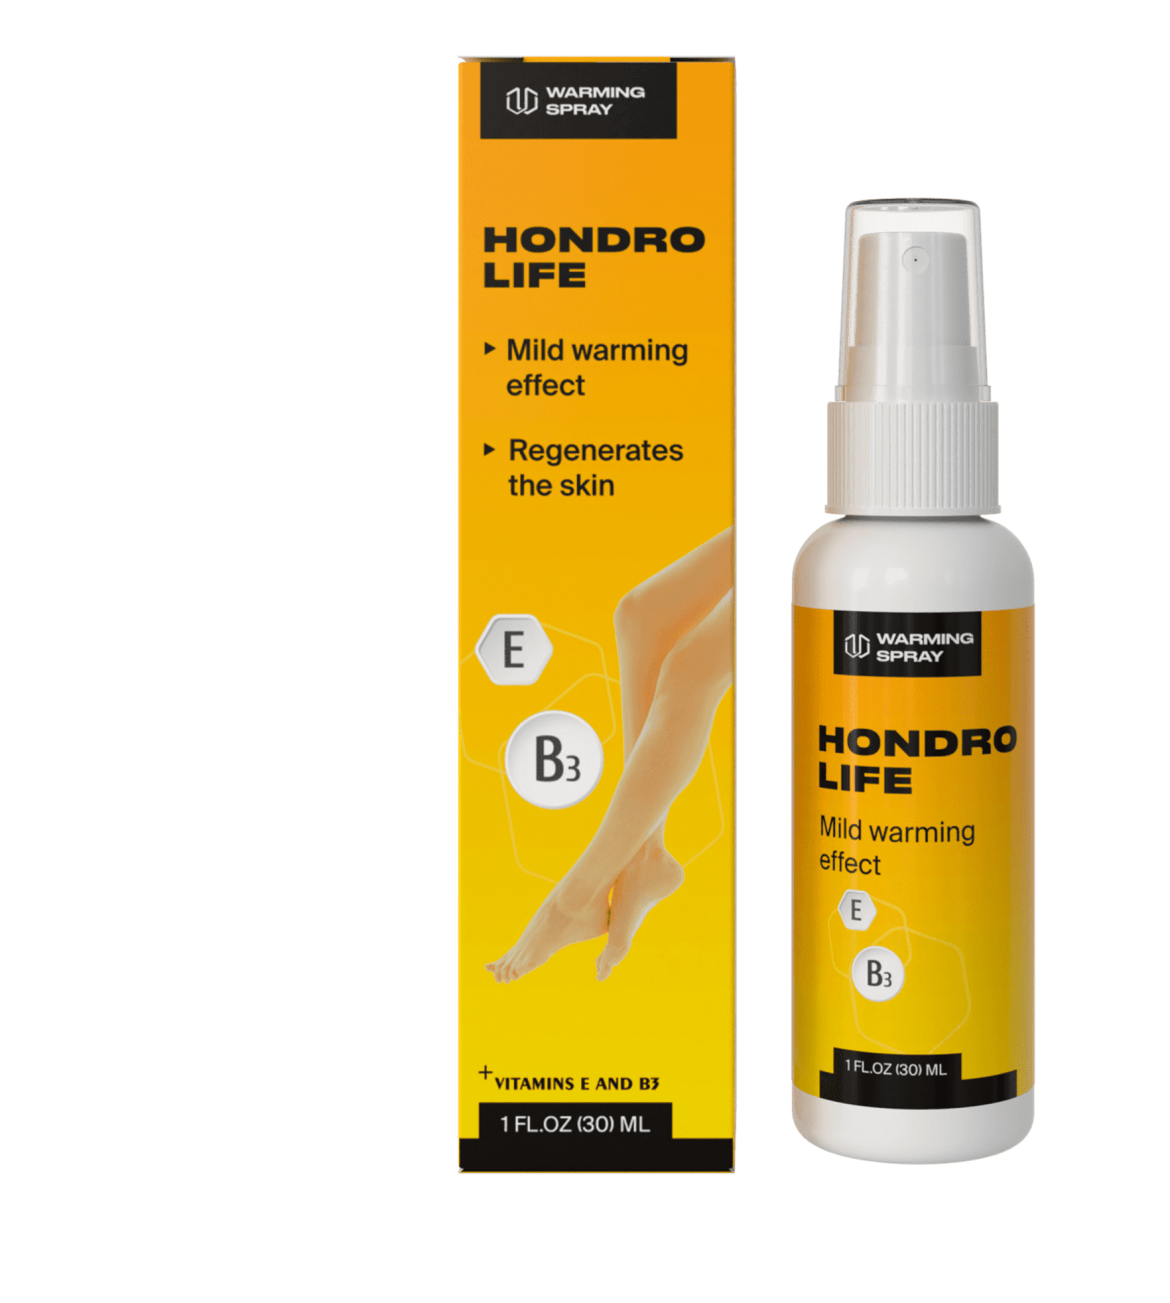 HondroLife spray articolare: è efficace? Utilizzo, opinioni e recensioni, acquisto